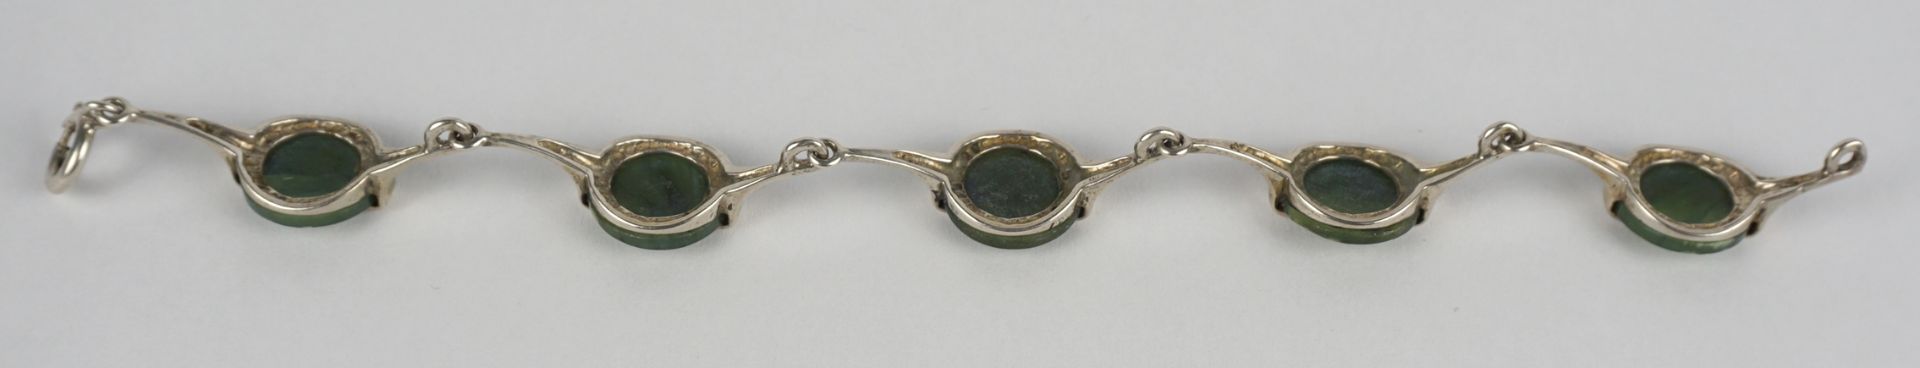 Armband mit Jade / Nephrit, Silber gepr., Gew.14,61g - Bild 3 aus 3